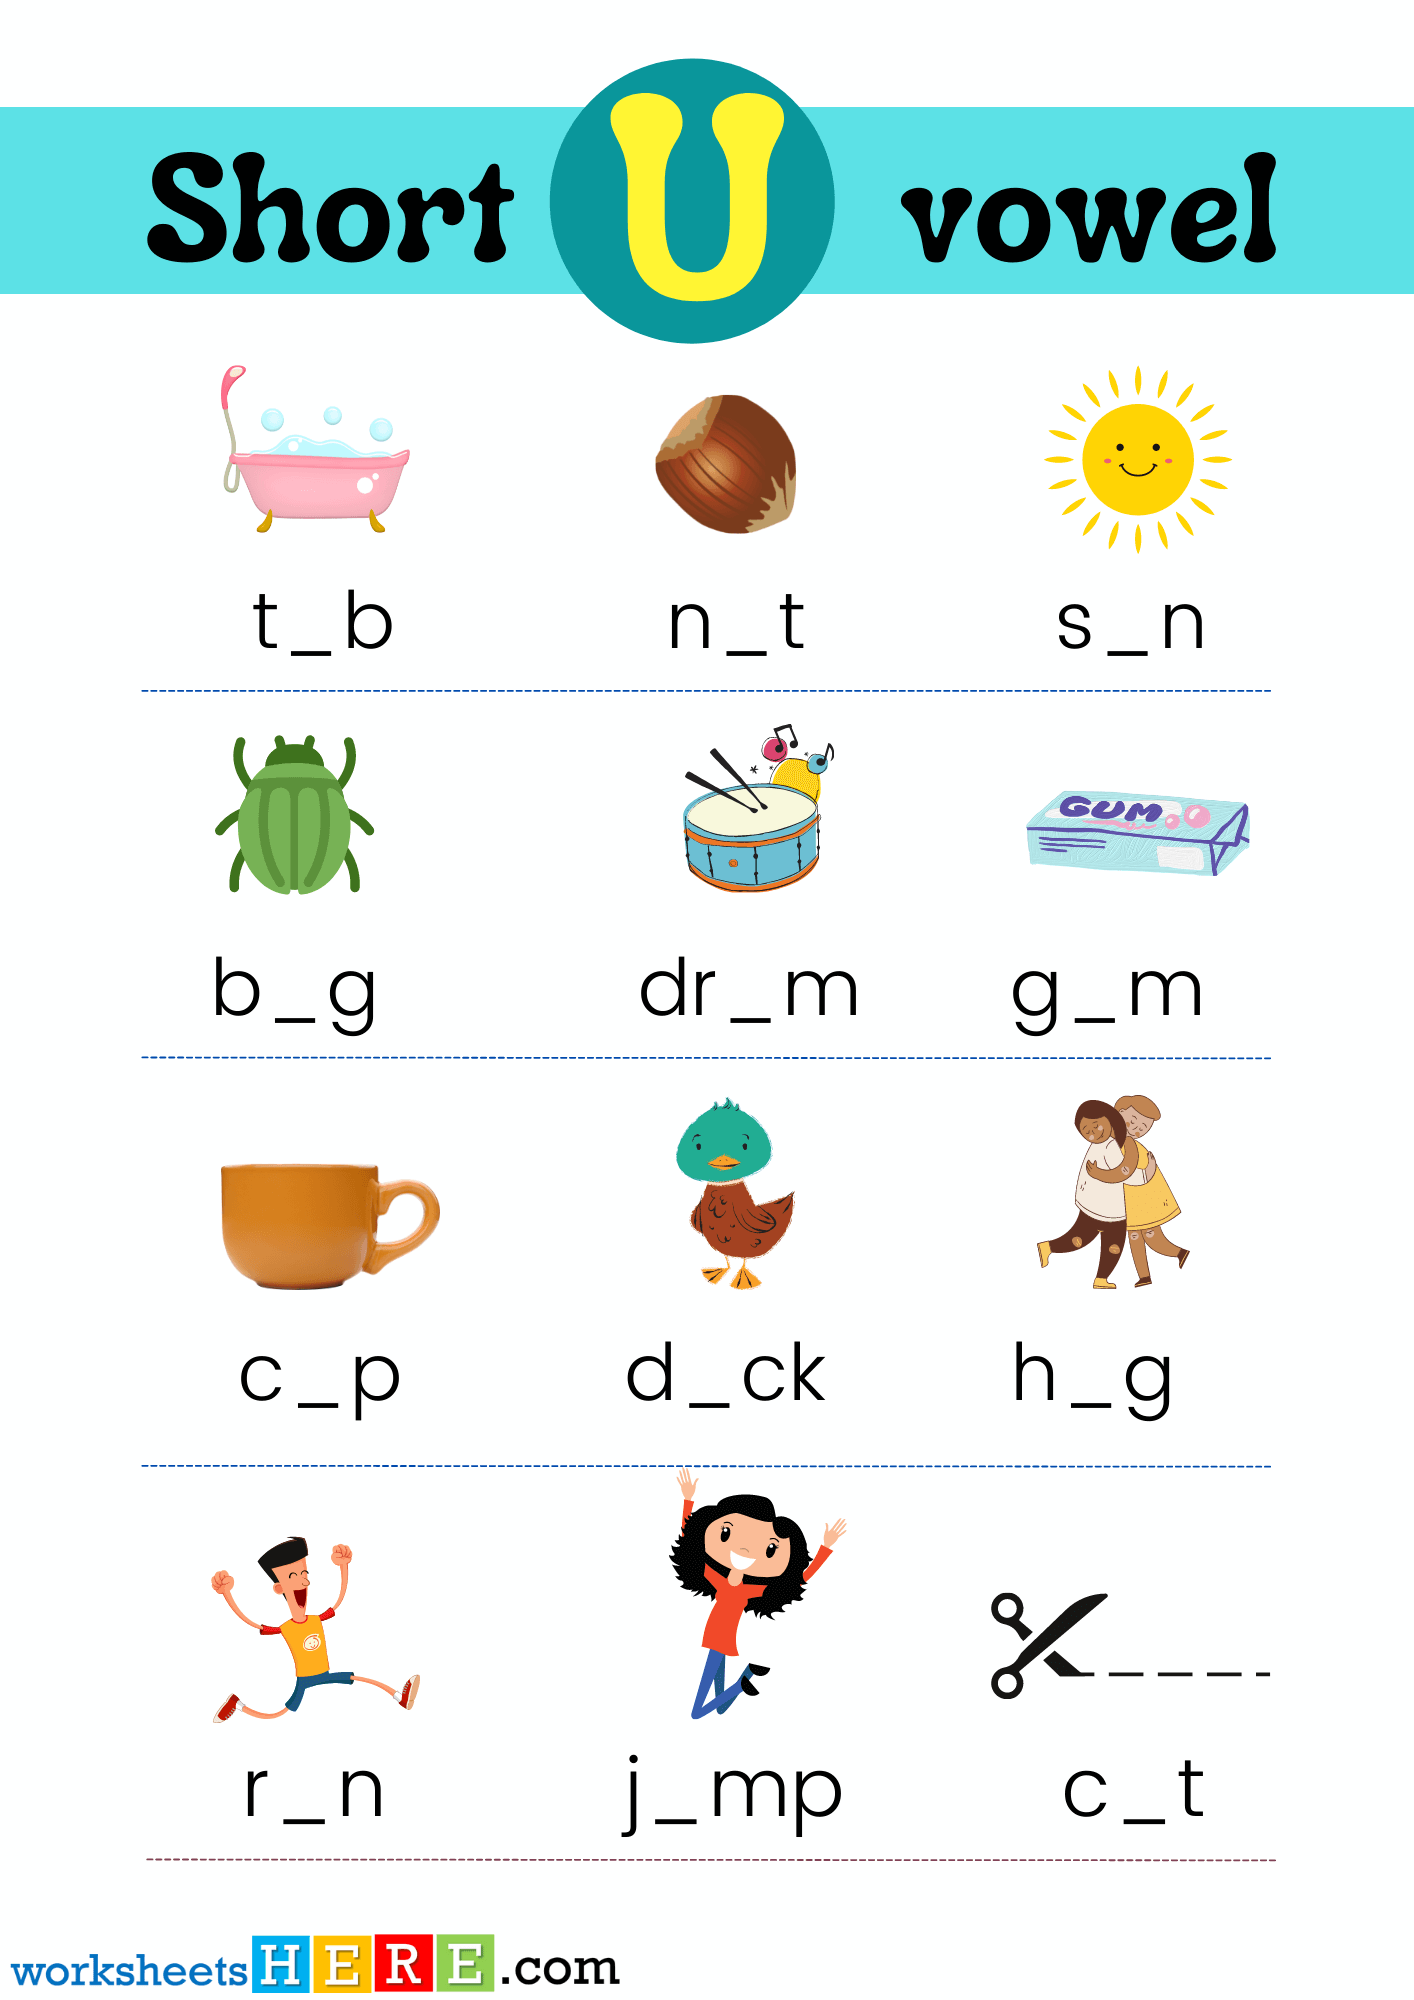 Find Missing Short Vowel U With Pictures PDF Worksheet For Kindergarten and Kids